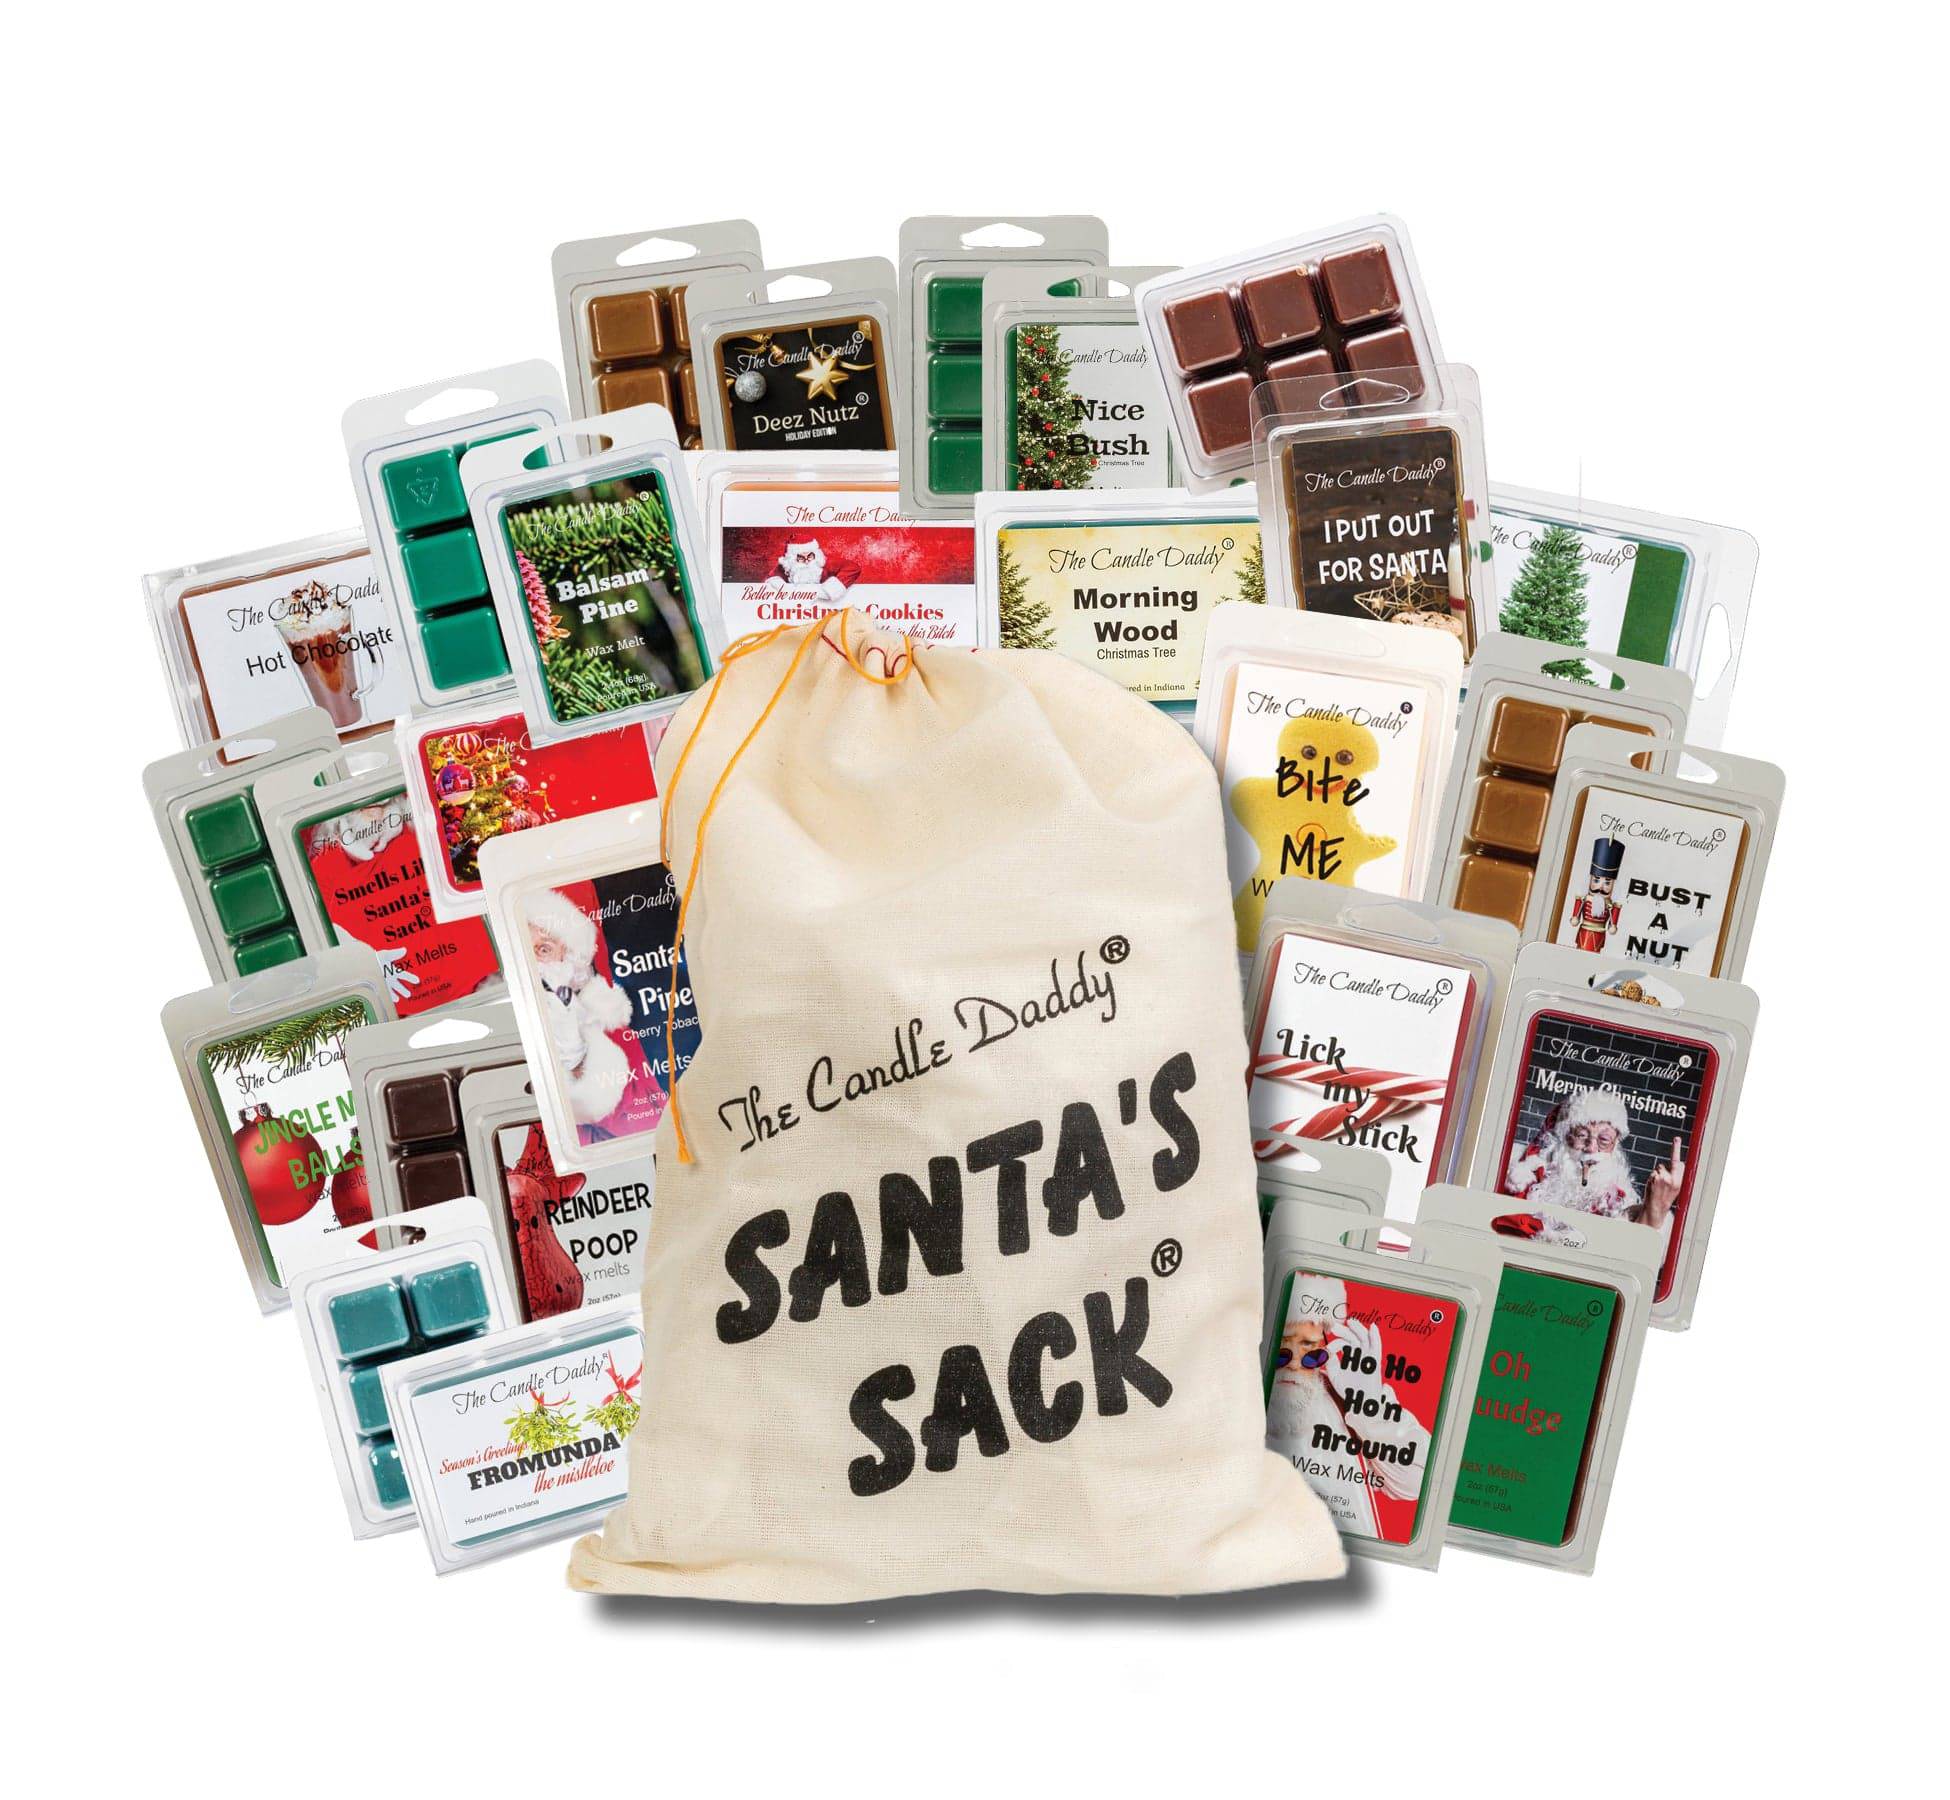 Santa's Sack - 11 Packs Of Random Christmas Wax Melts in the Sack -  Randomly Selected - Great Dirty Santa Gift